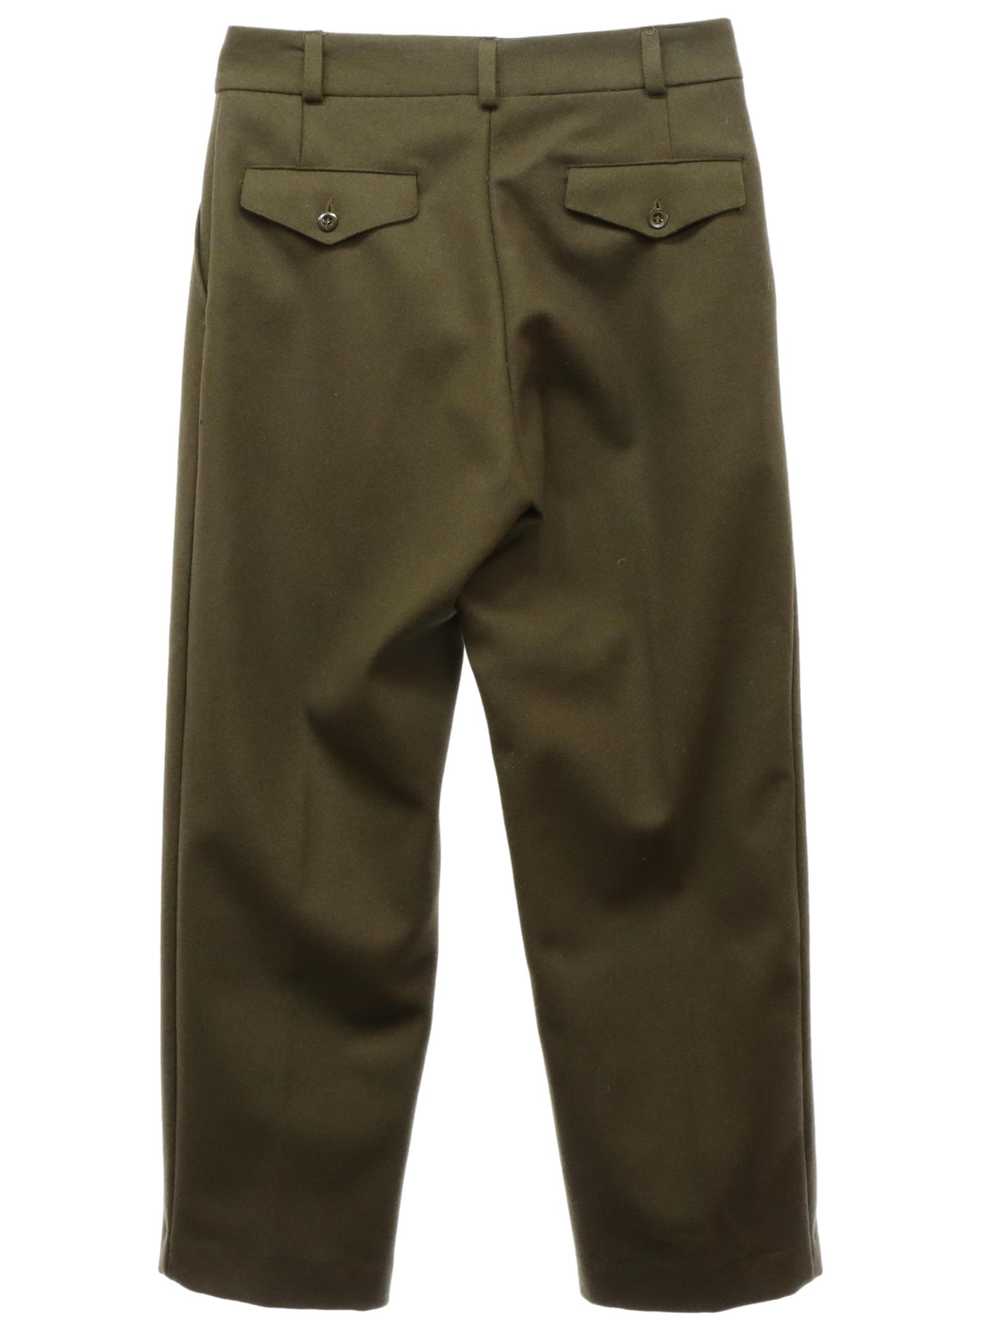 1960's Mens Military Uniform Pants - image 3